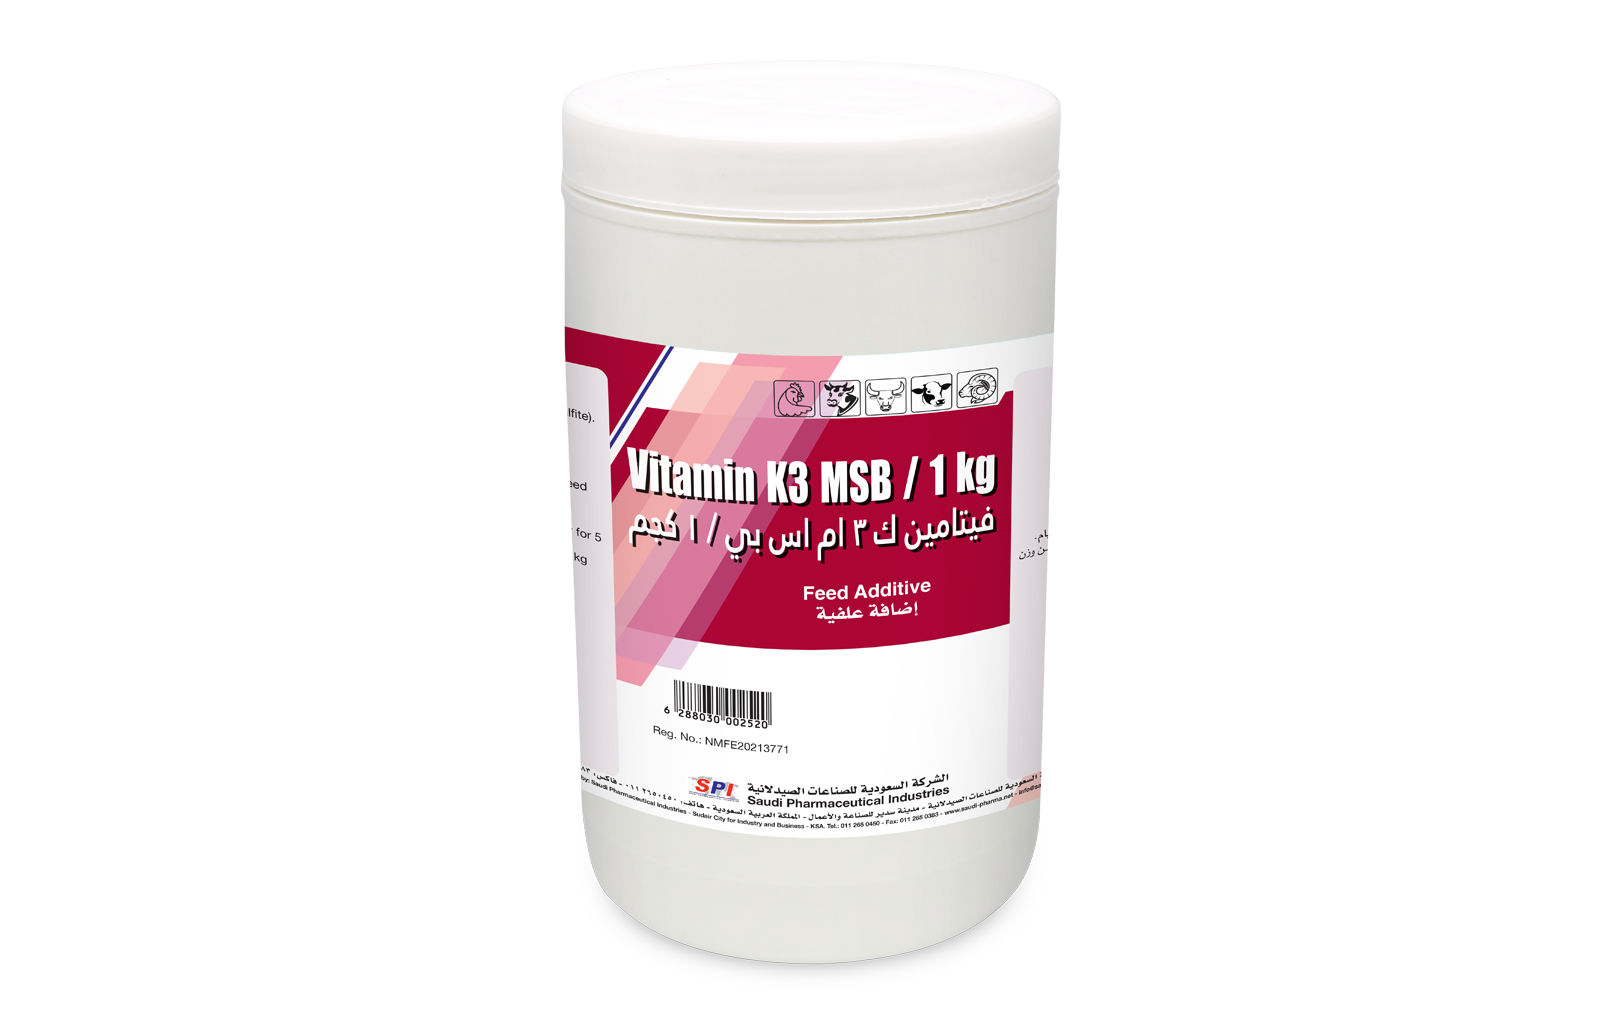 Vitamin K3 MSB 1 kg